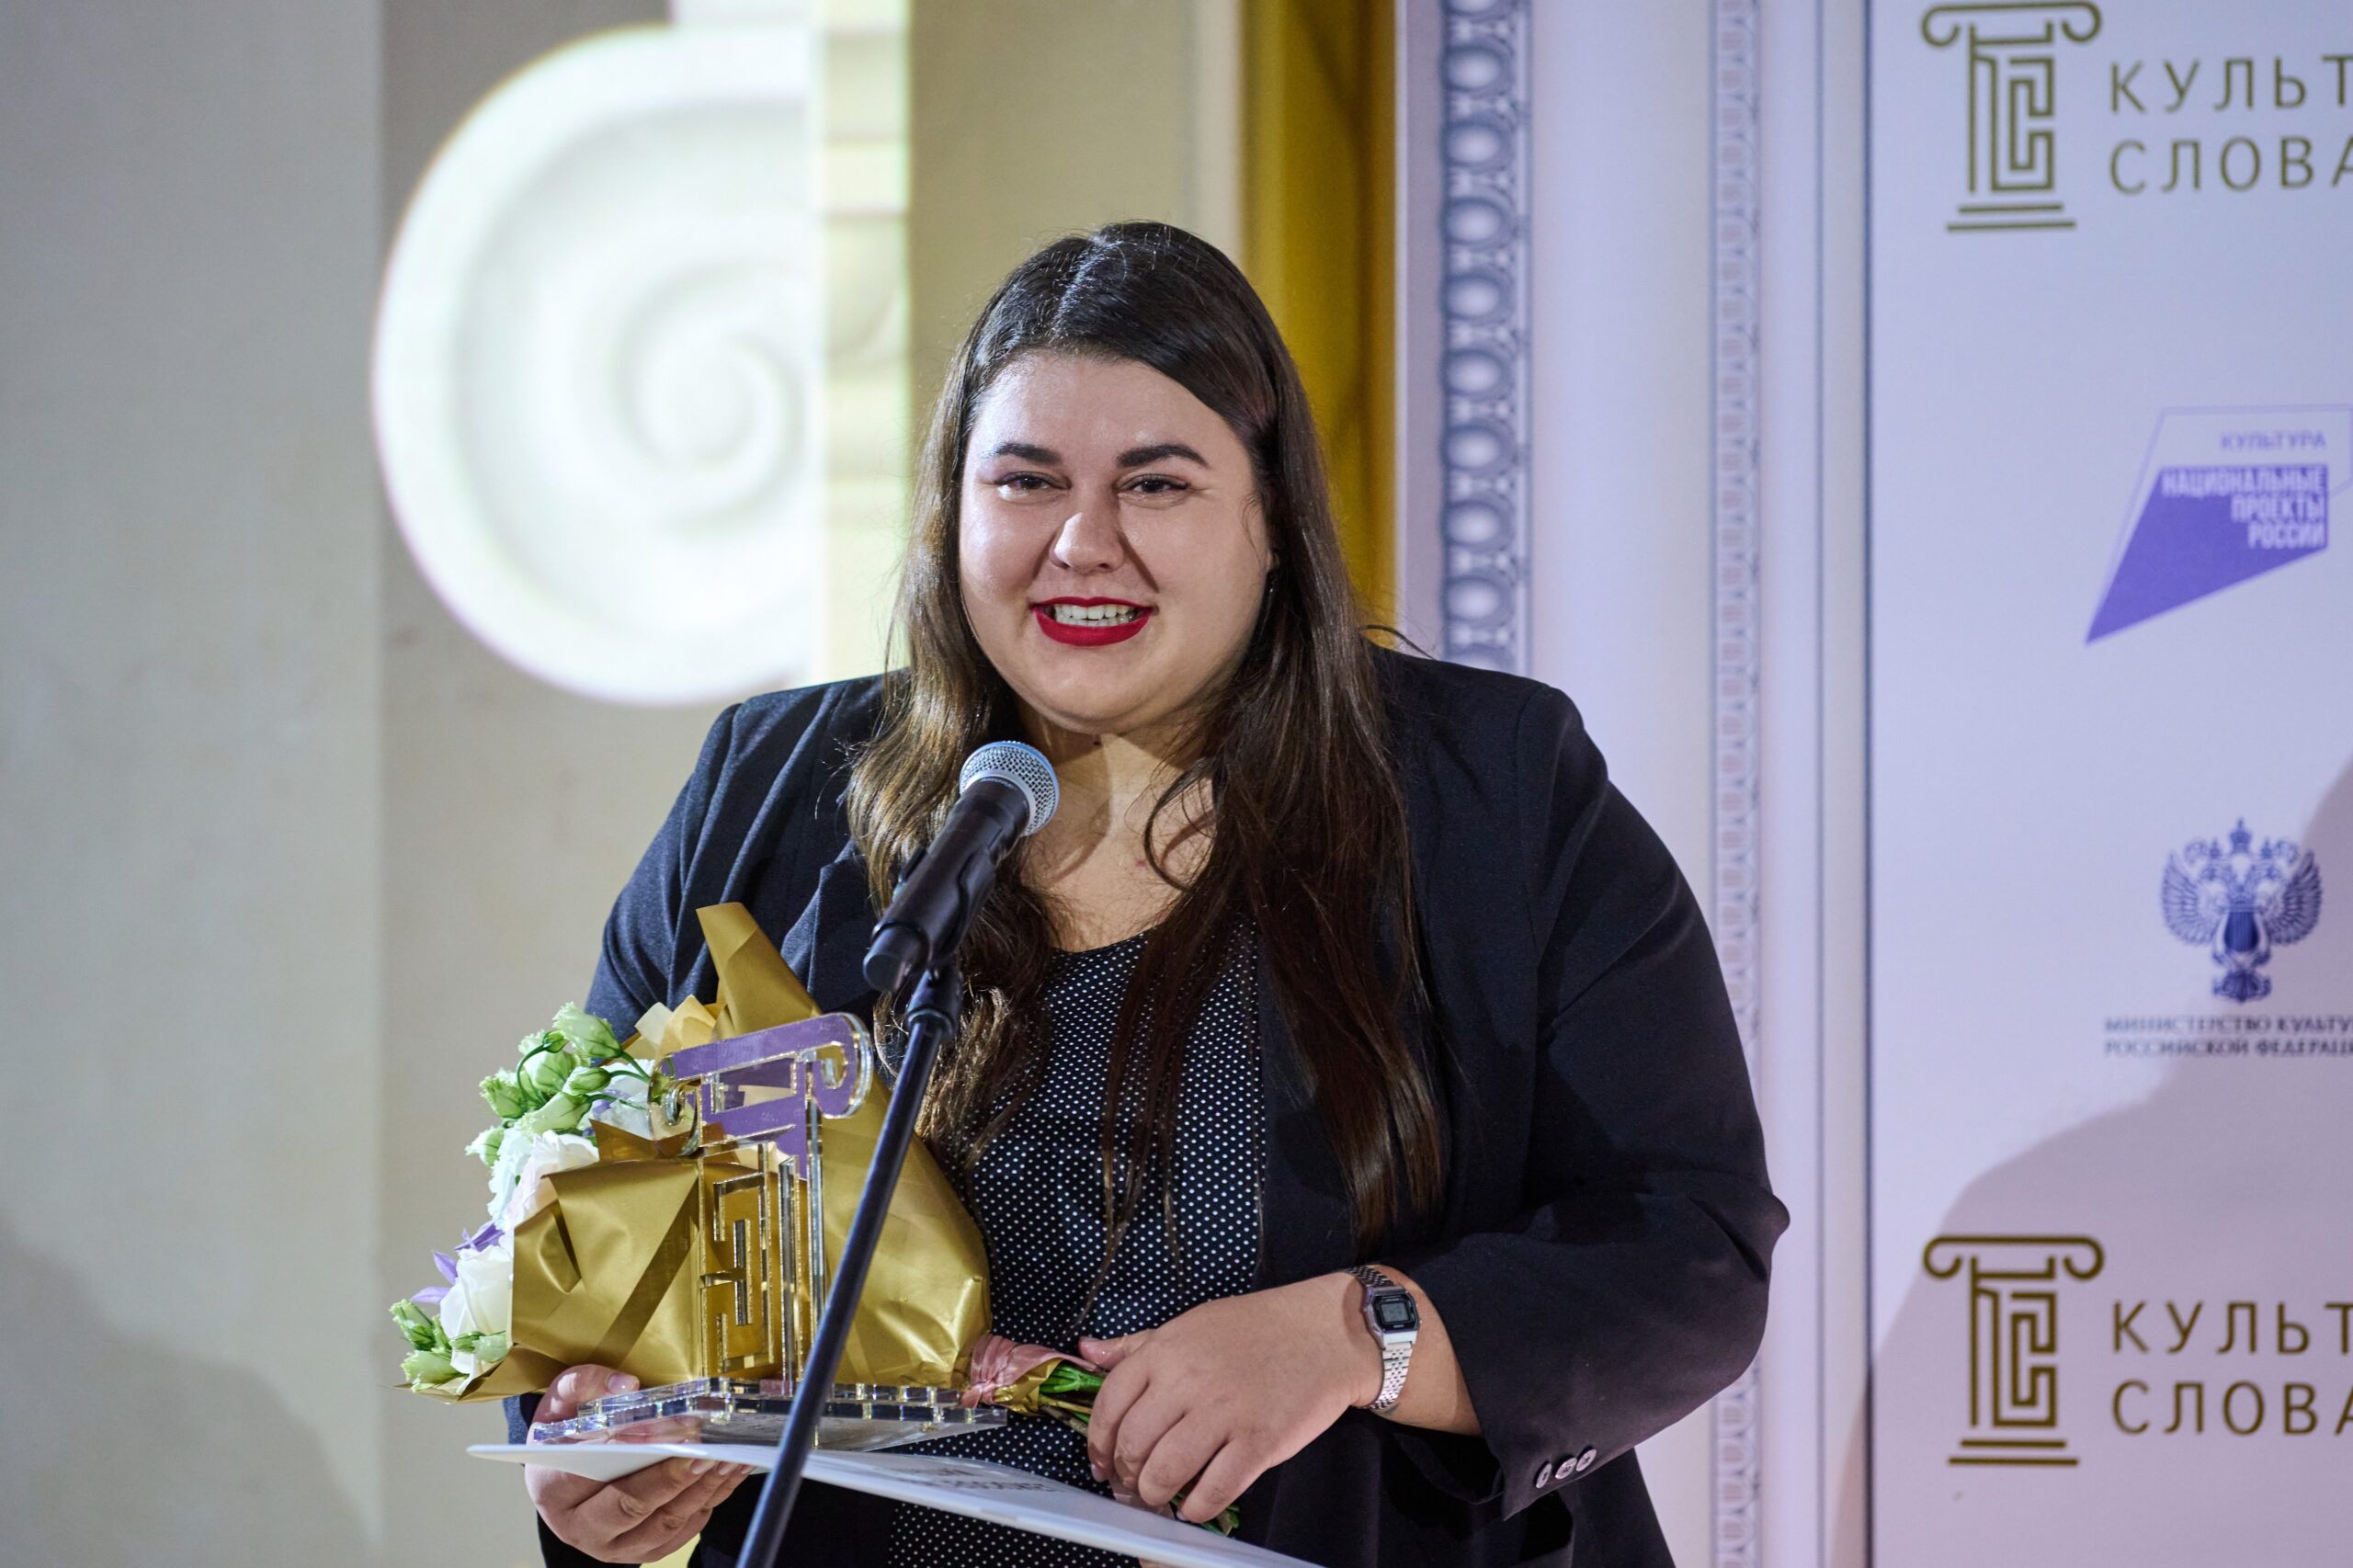 Кристина Каширина из Якутии стала победителем Всероссийского конкурса СМИ «Культура слова»